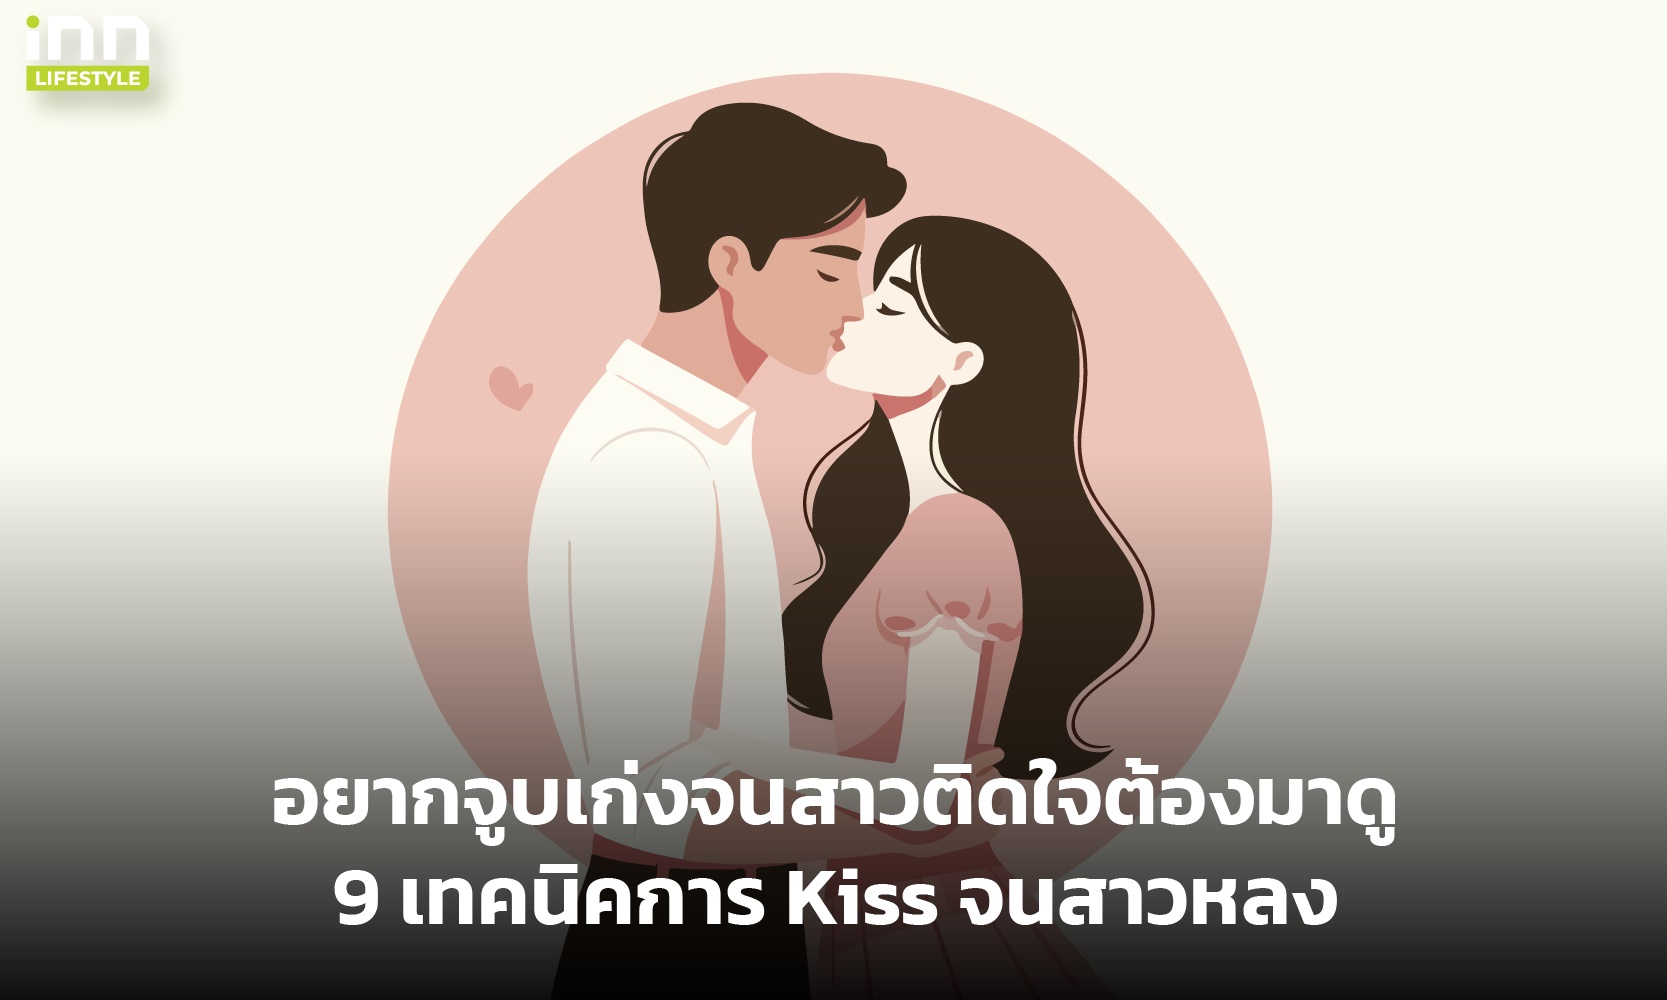 อยากจูบเก่งจนสาวติดใจต้องมาดู 9 เทคนิคการ Kiss จนสาวหลง